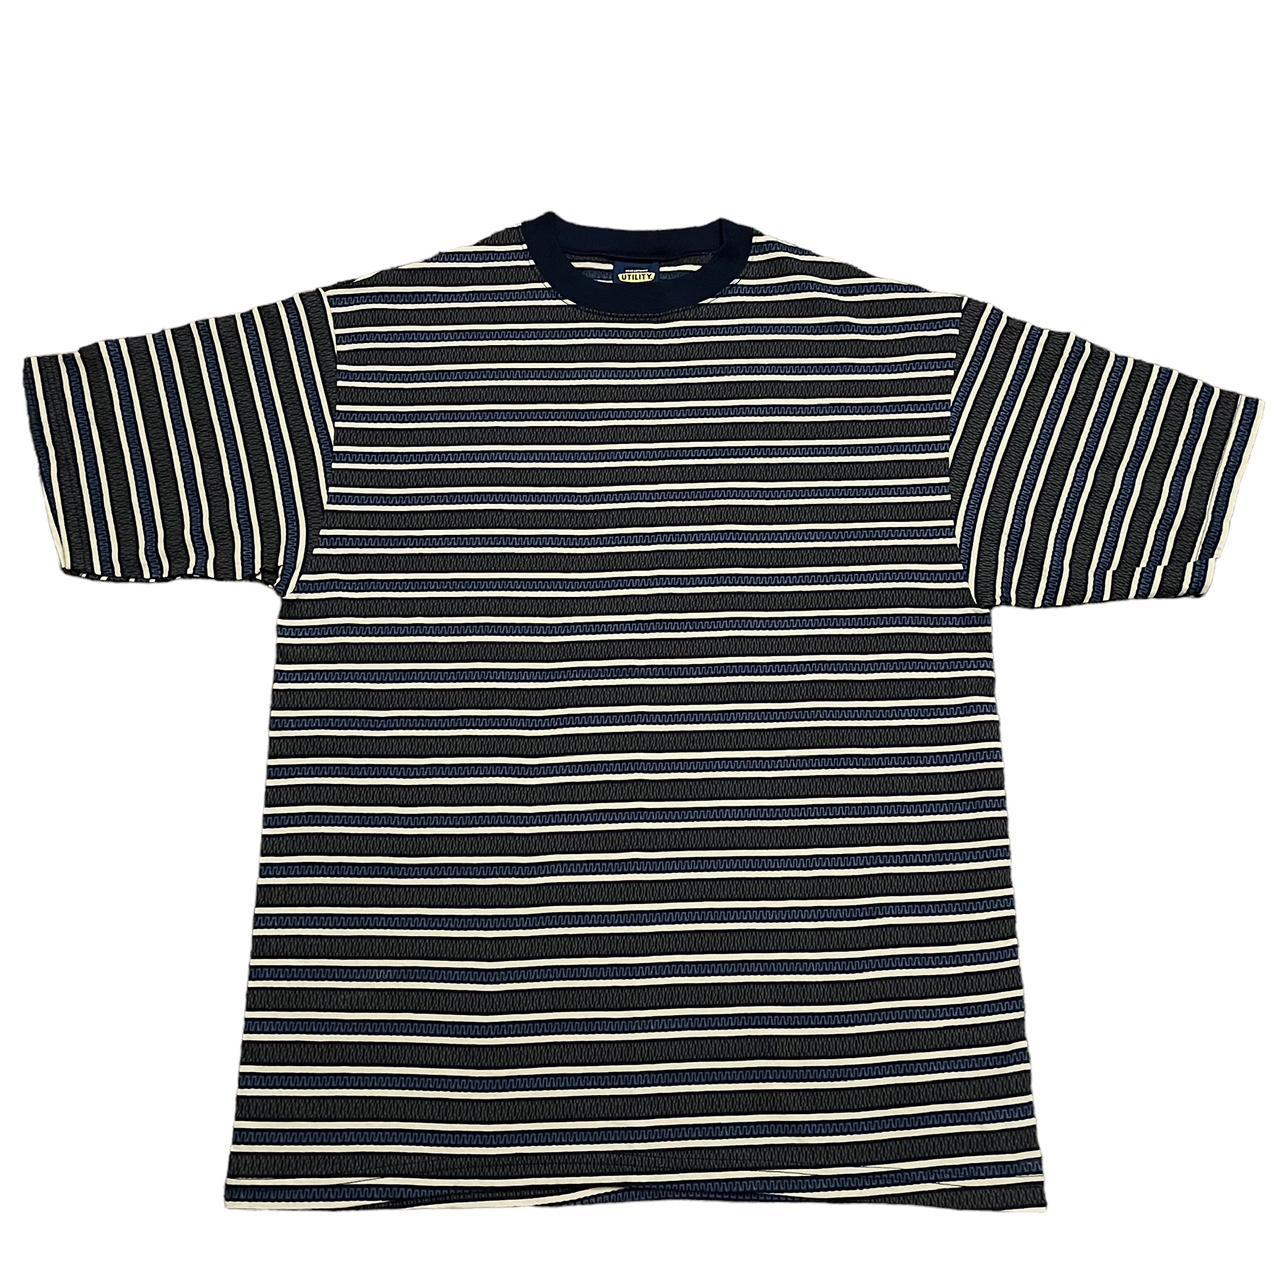 cybery2k striped skater shirt Size Large - Depop